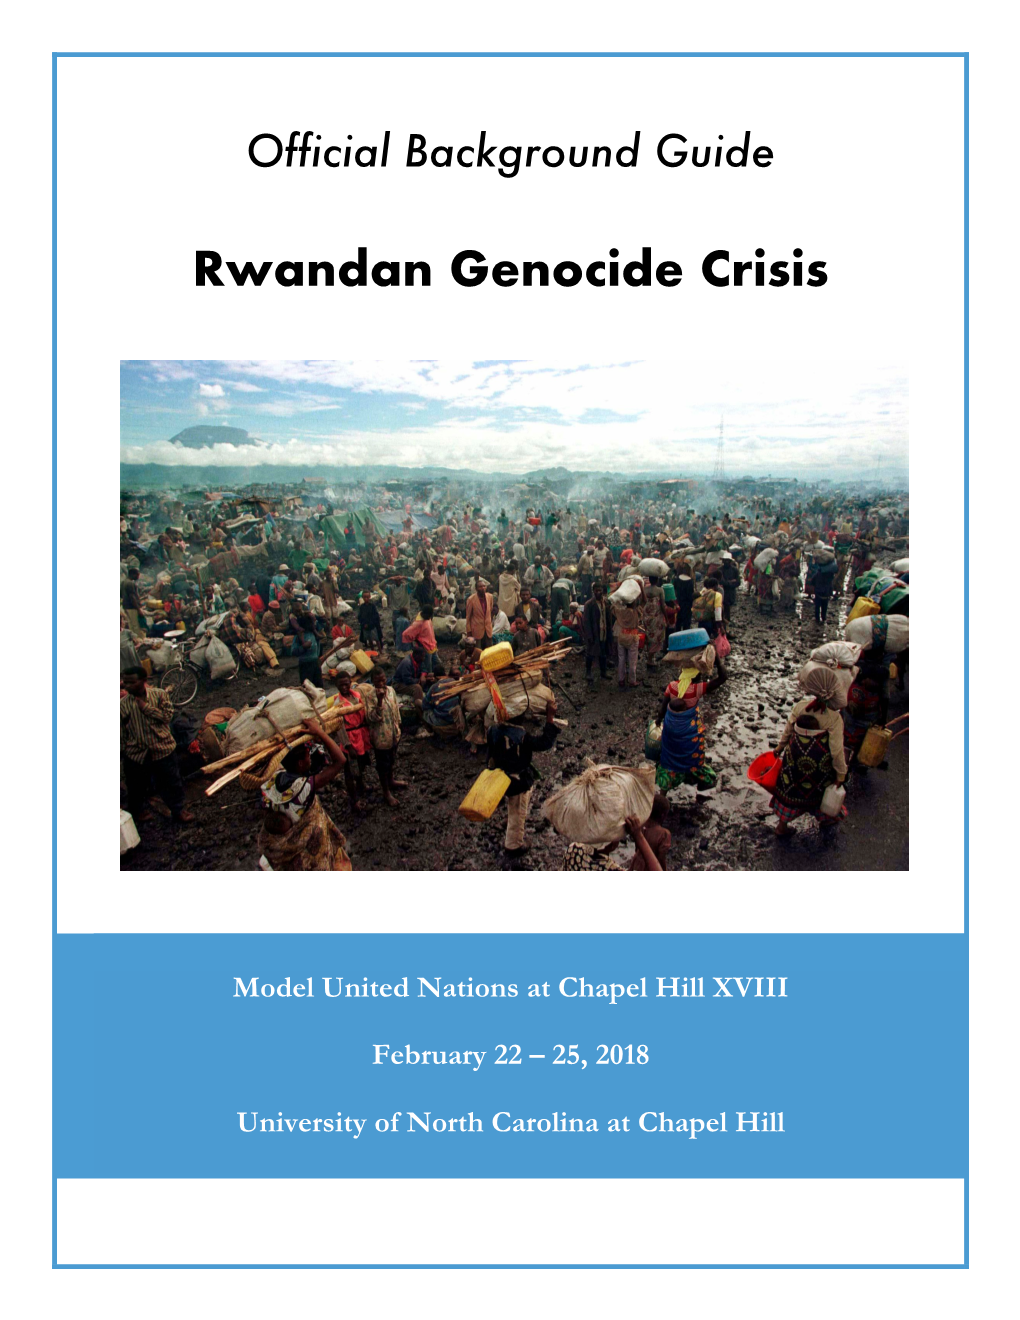 Rwandan Genocide Crisis